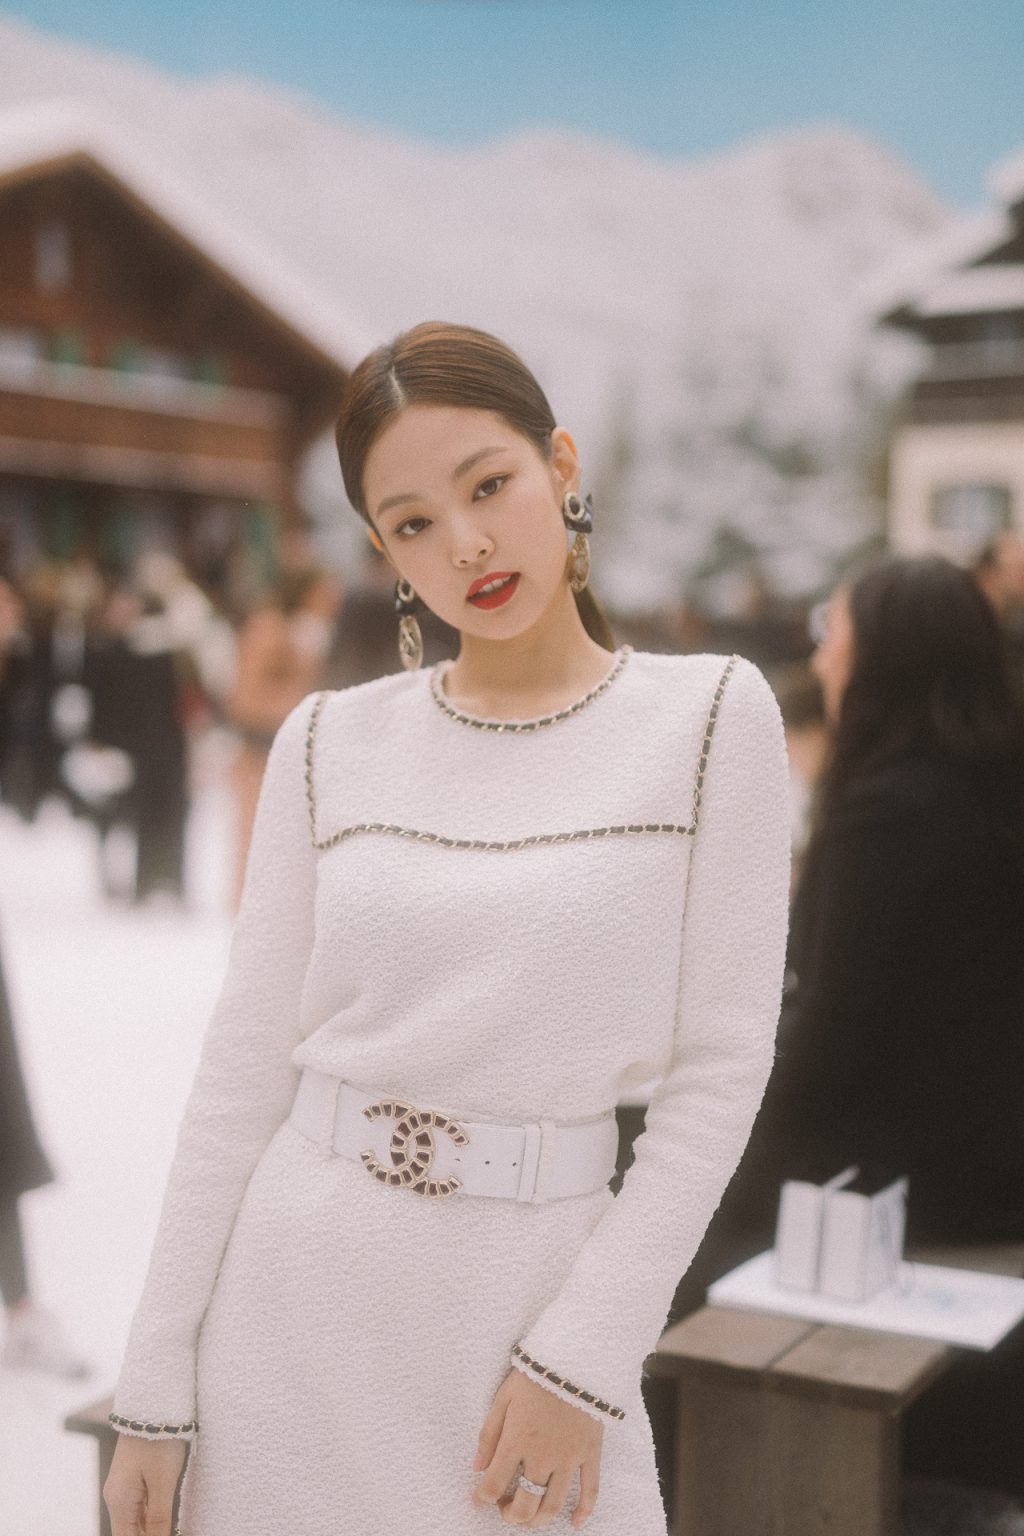 Fan tranh cãi vì chức danh đại sứ thương hiệu Chanel của Jennie Victoria   Phong cách sao  Việt Giải Trí